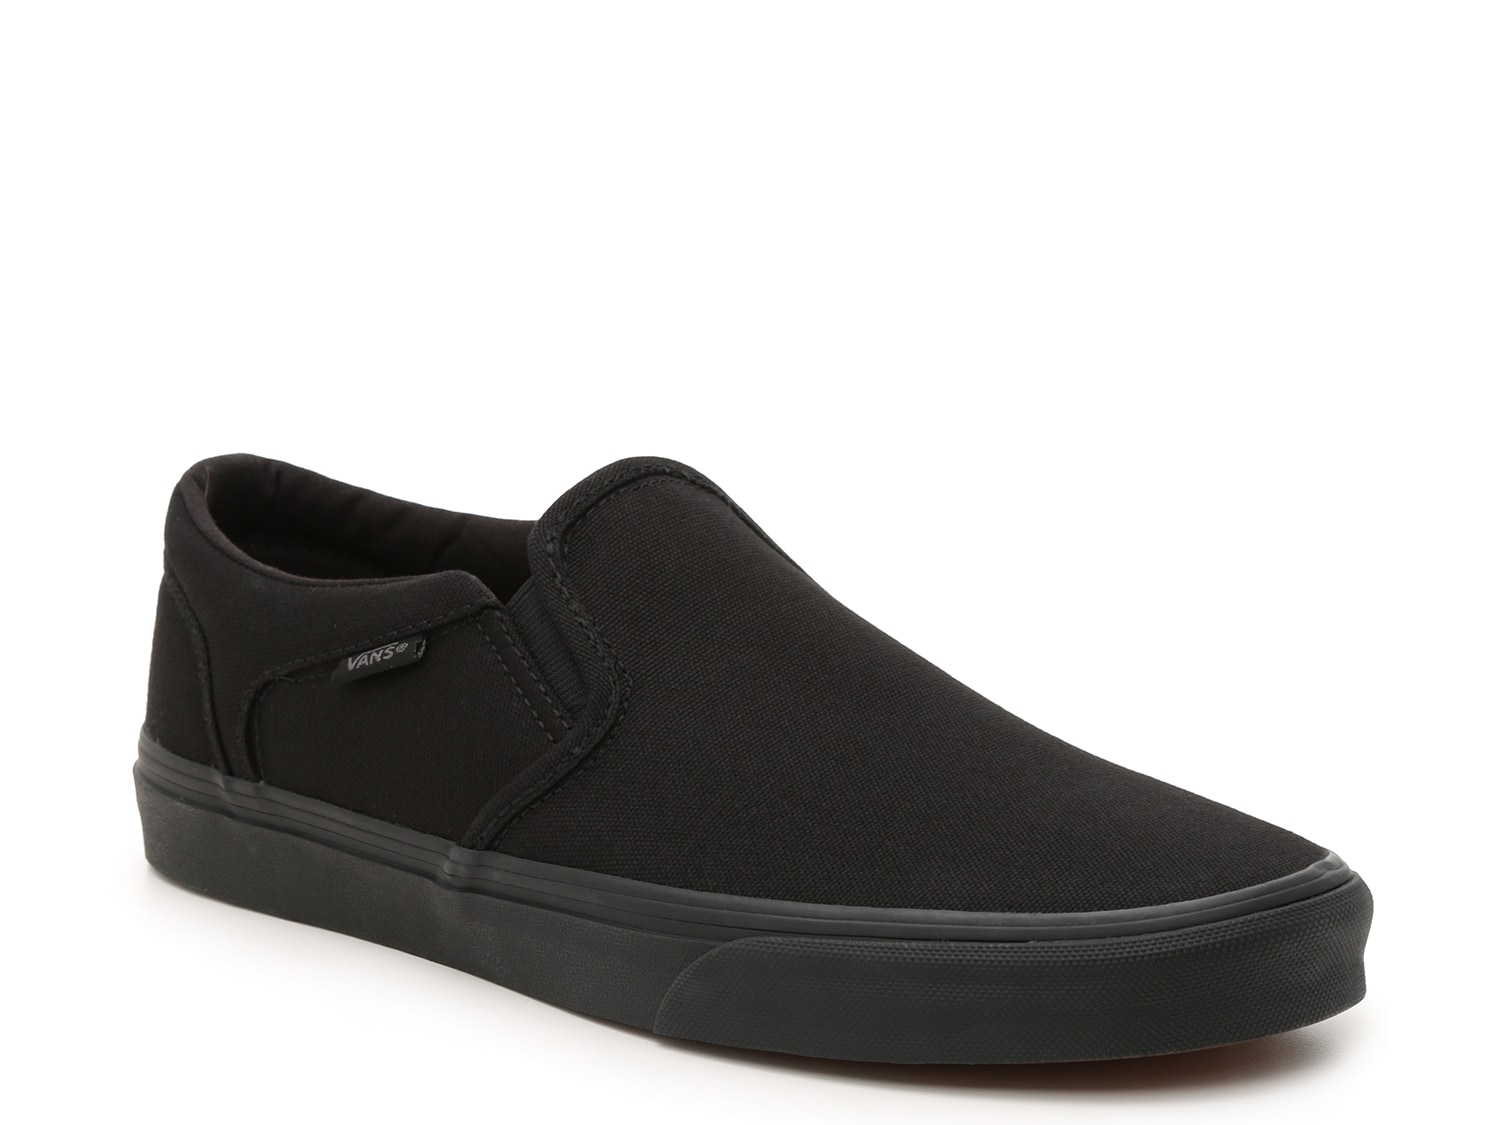 Vans Asher Slip-On Sneaker - Men's - Free Shipping